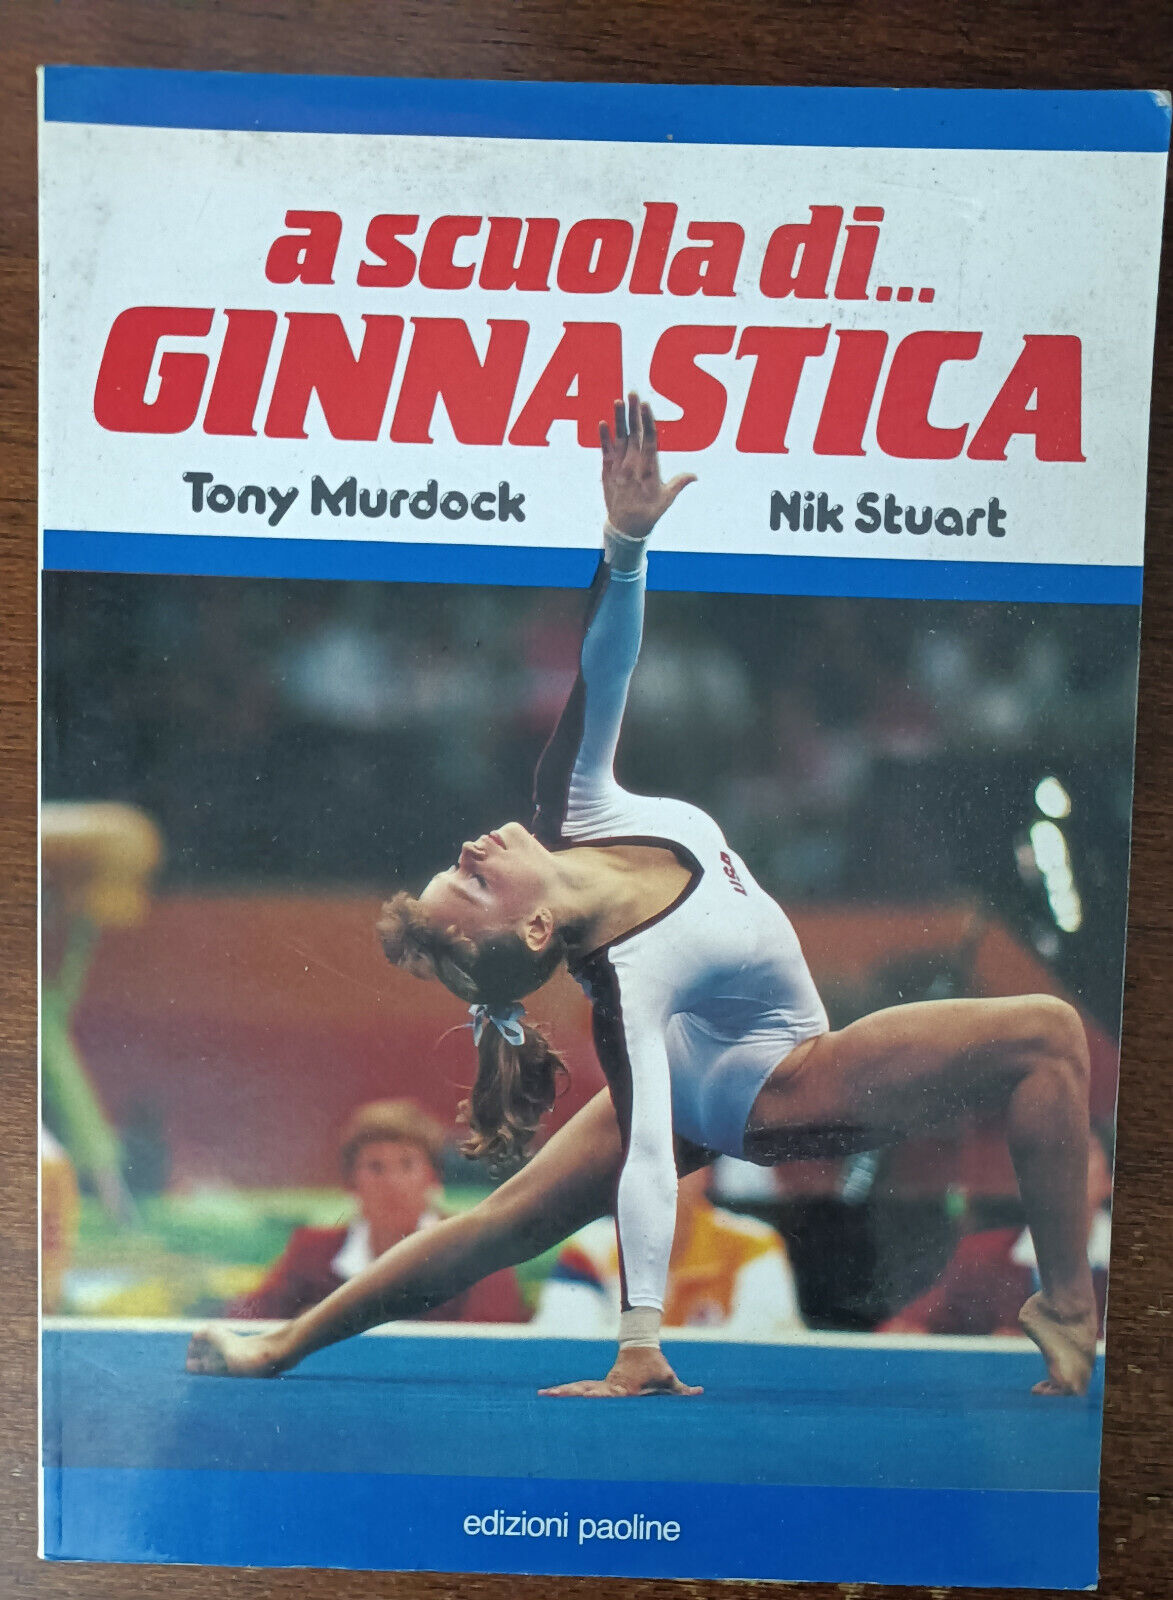 A scuola di ginnastica - Tony Murdock, Nick Stuart - Edizioni paoline, 1993 - A